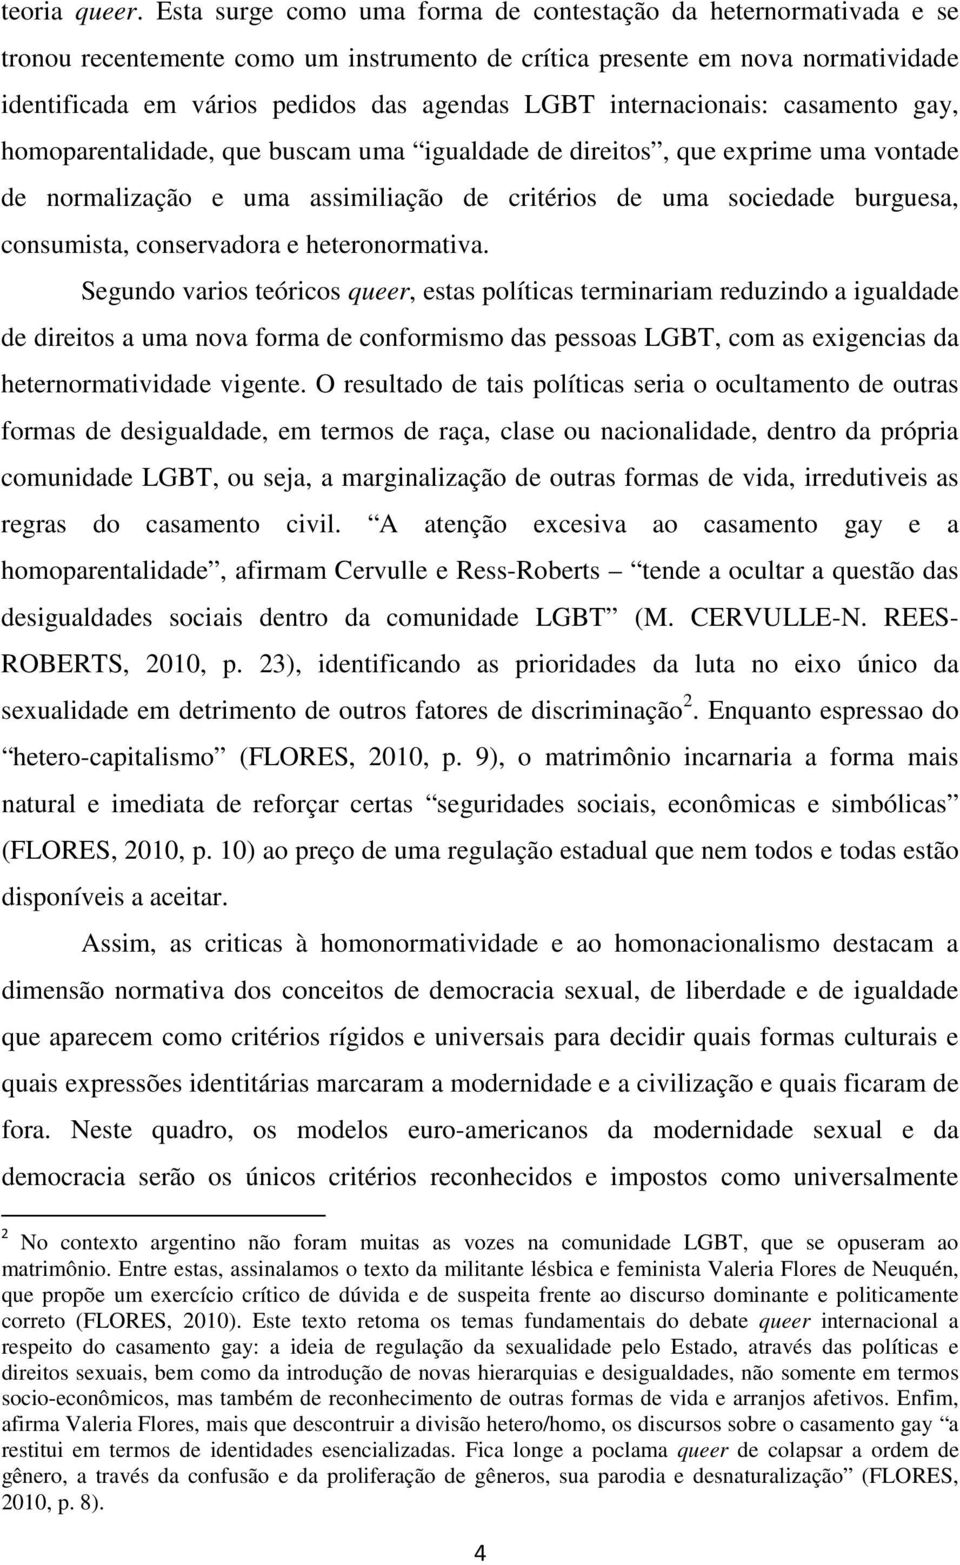 internacionais: casamento gay, homoparentalidade, que buscam uma igualdade de direitos, que exprime uma vontade de normalização e uma assimiliação de critérios de uma sociedade burguesa, consumista,